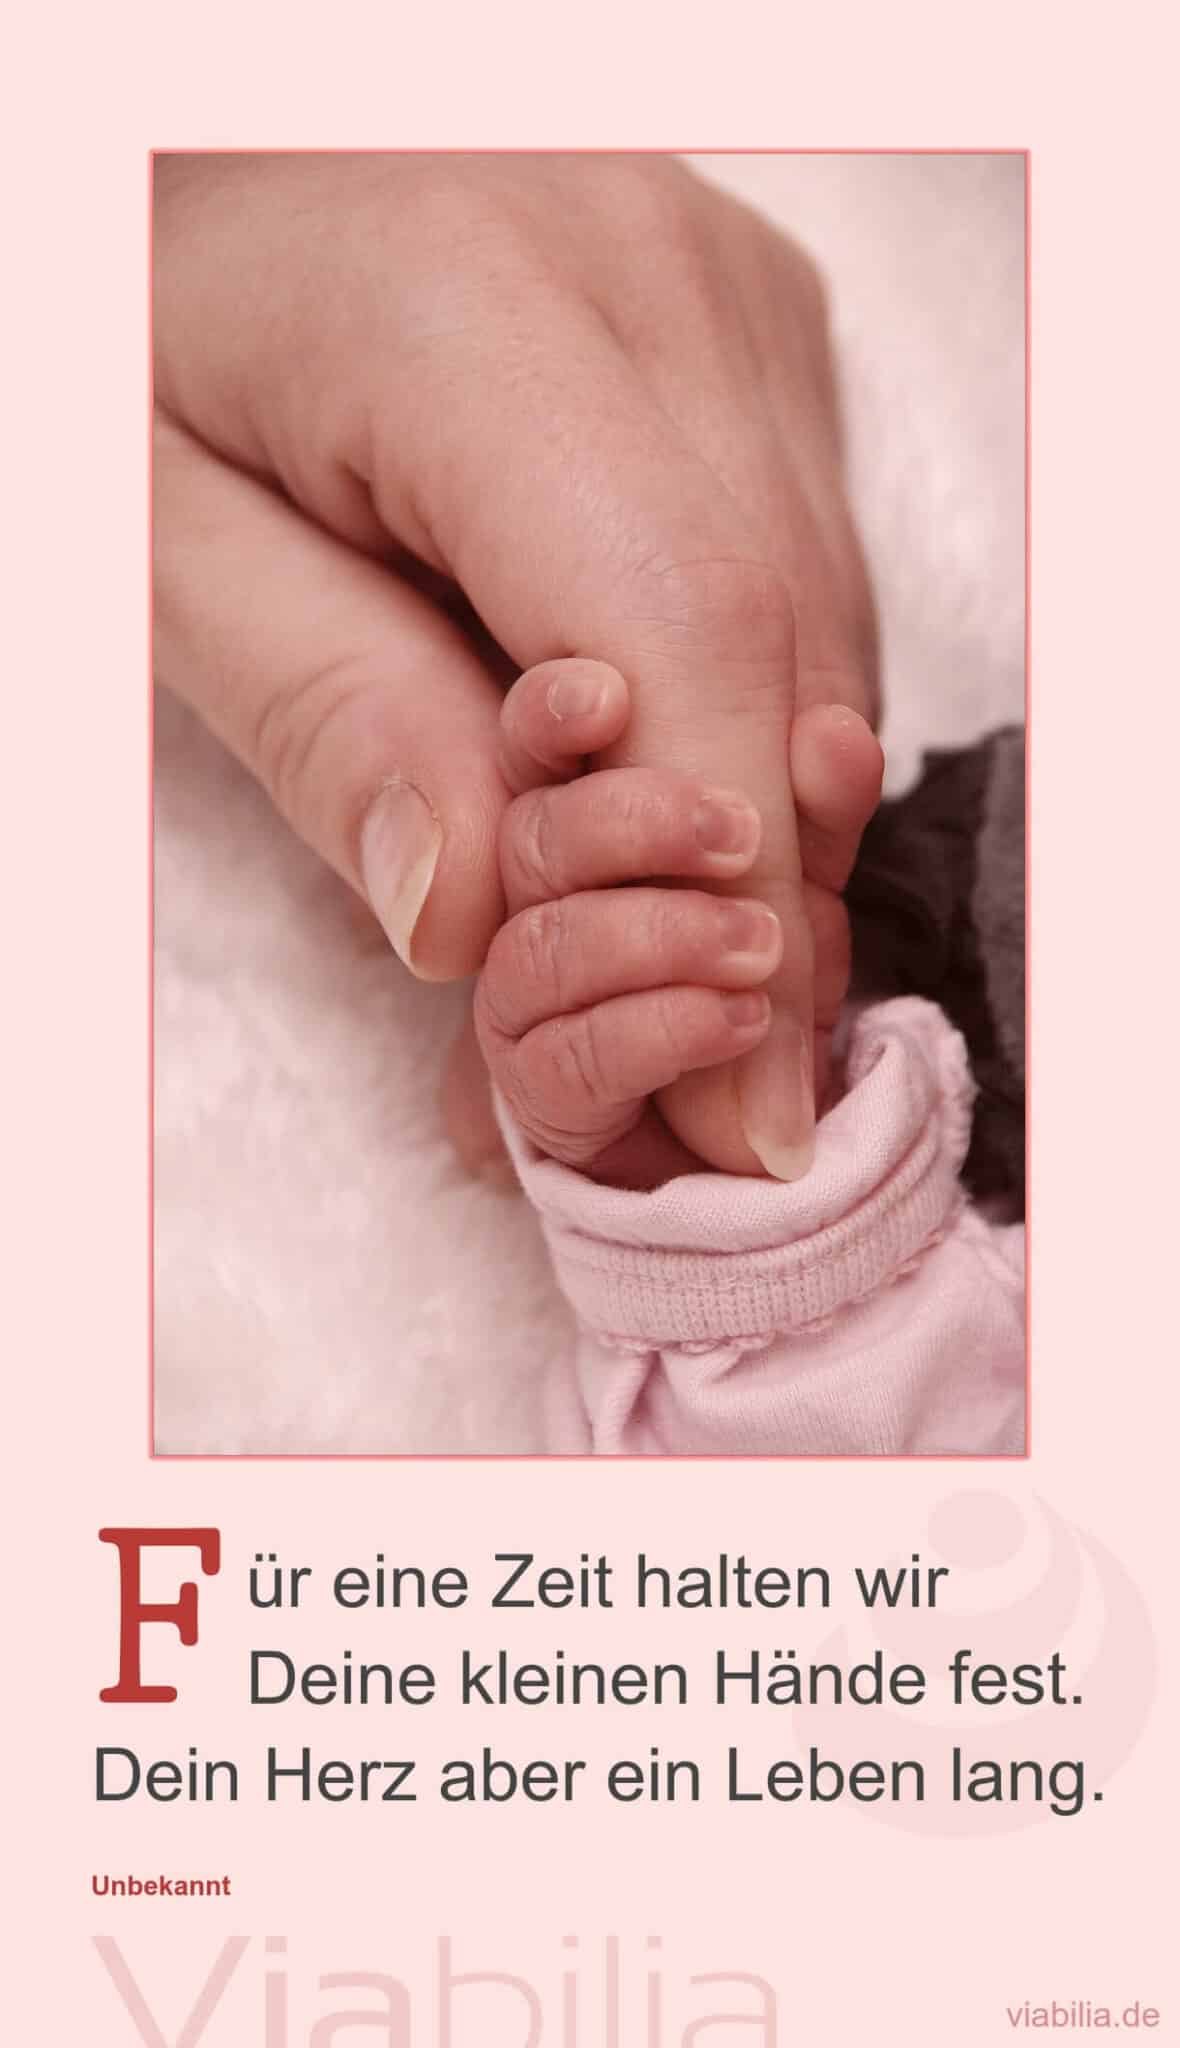 Kurzer Geburtsspruch: kleine Hände